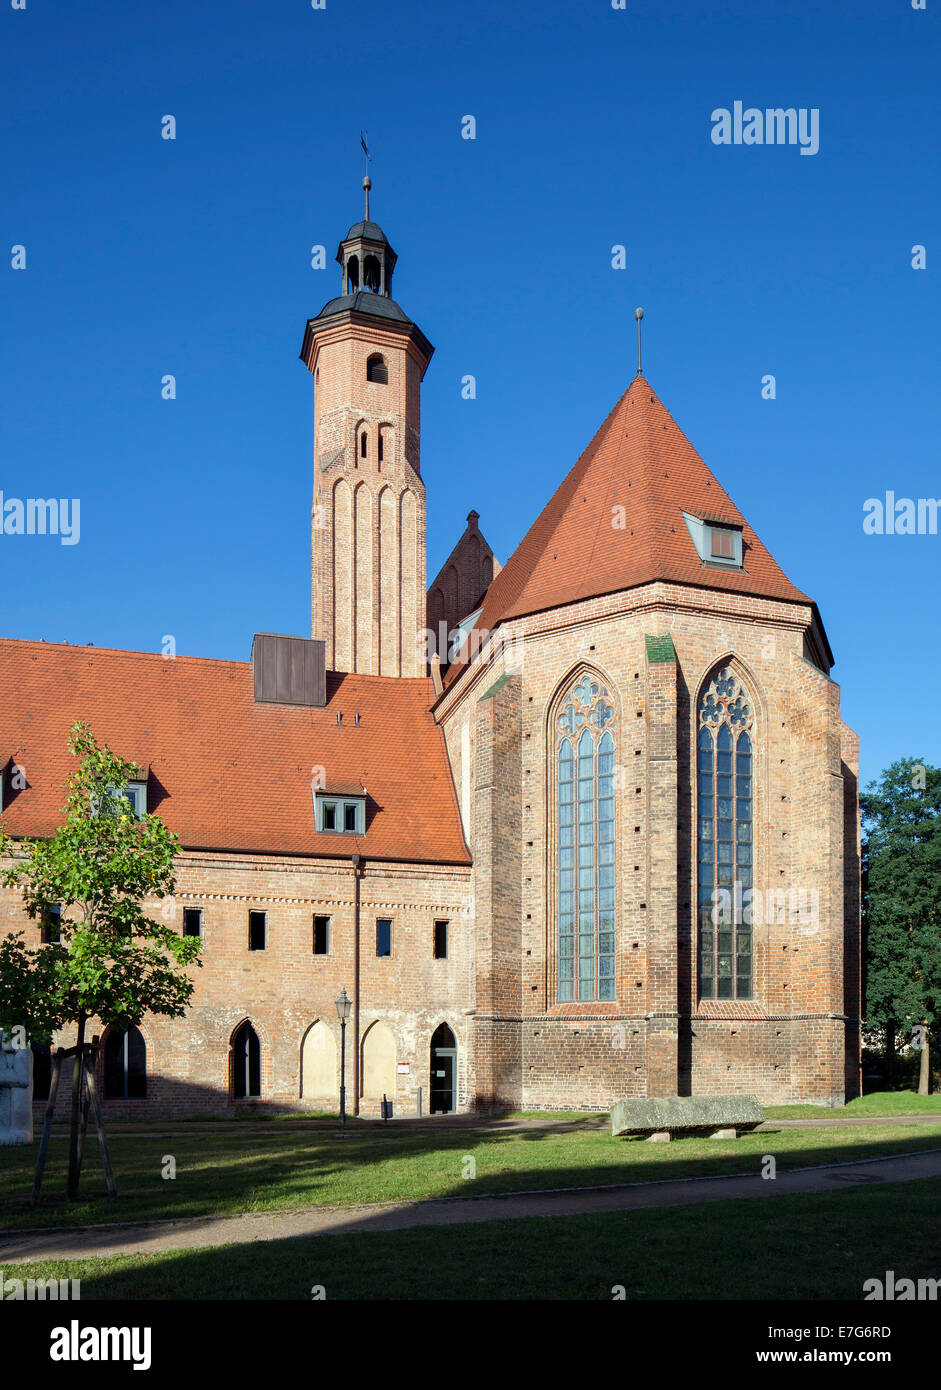 Ehemalige Dominikanerkloster und Kirche von St. Pauli, heute das archäologische Landesmuseum, Brandenburg an der Havel, Brandenburg Stockfoto